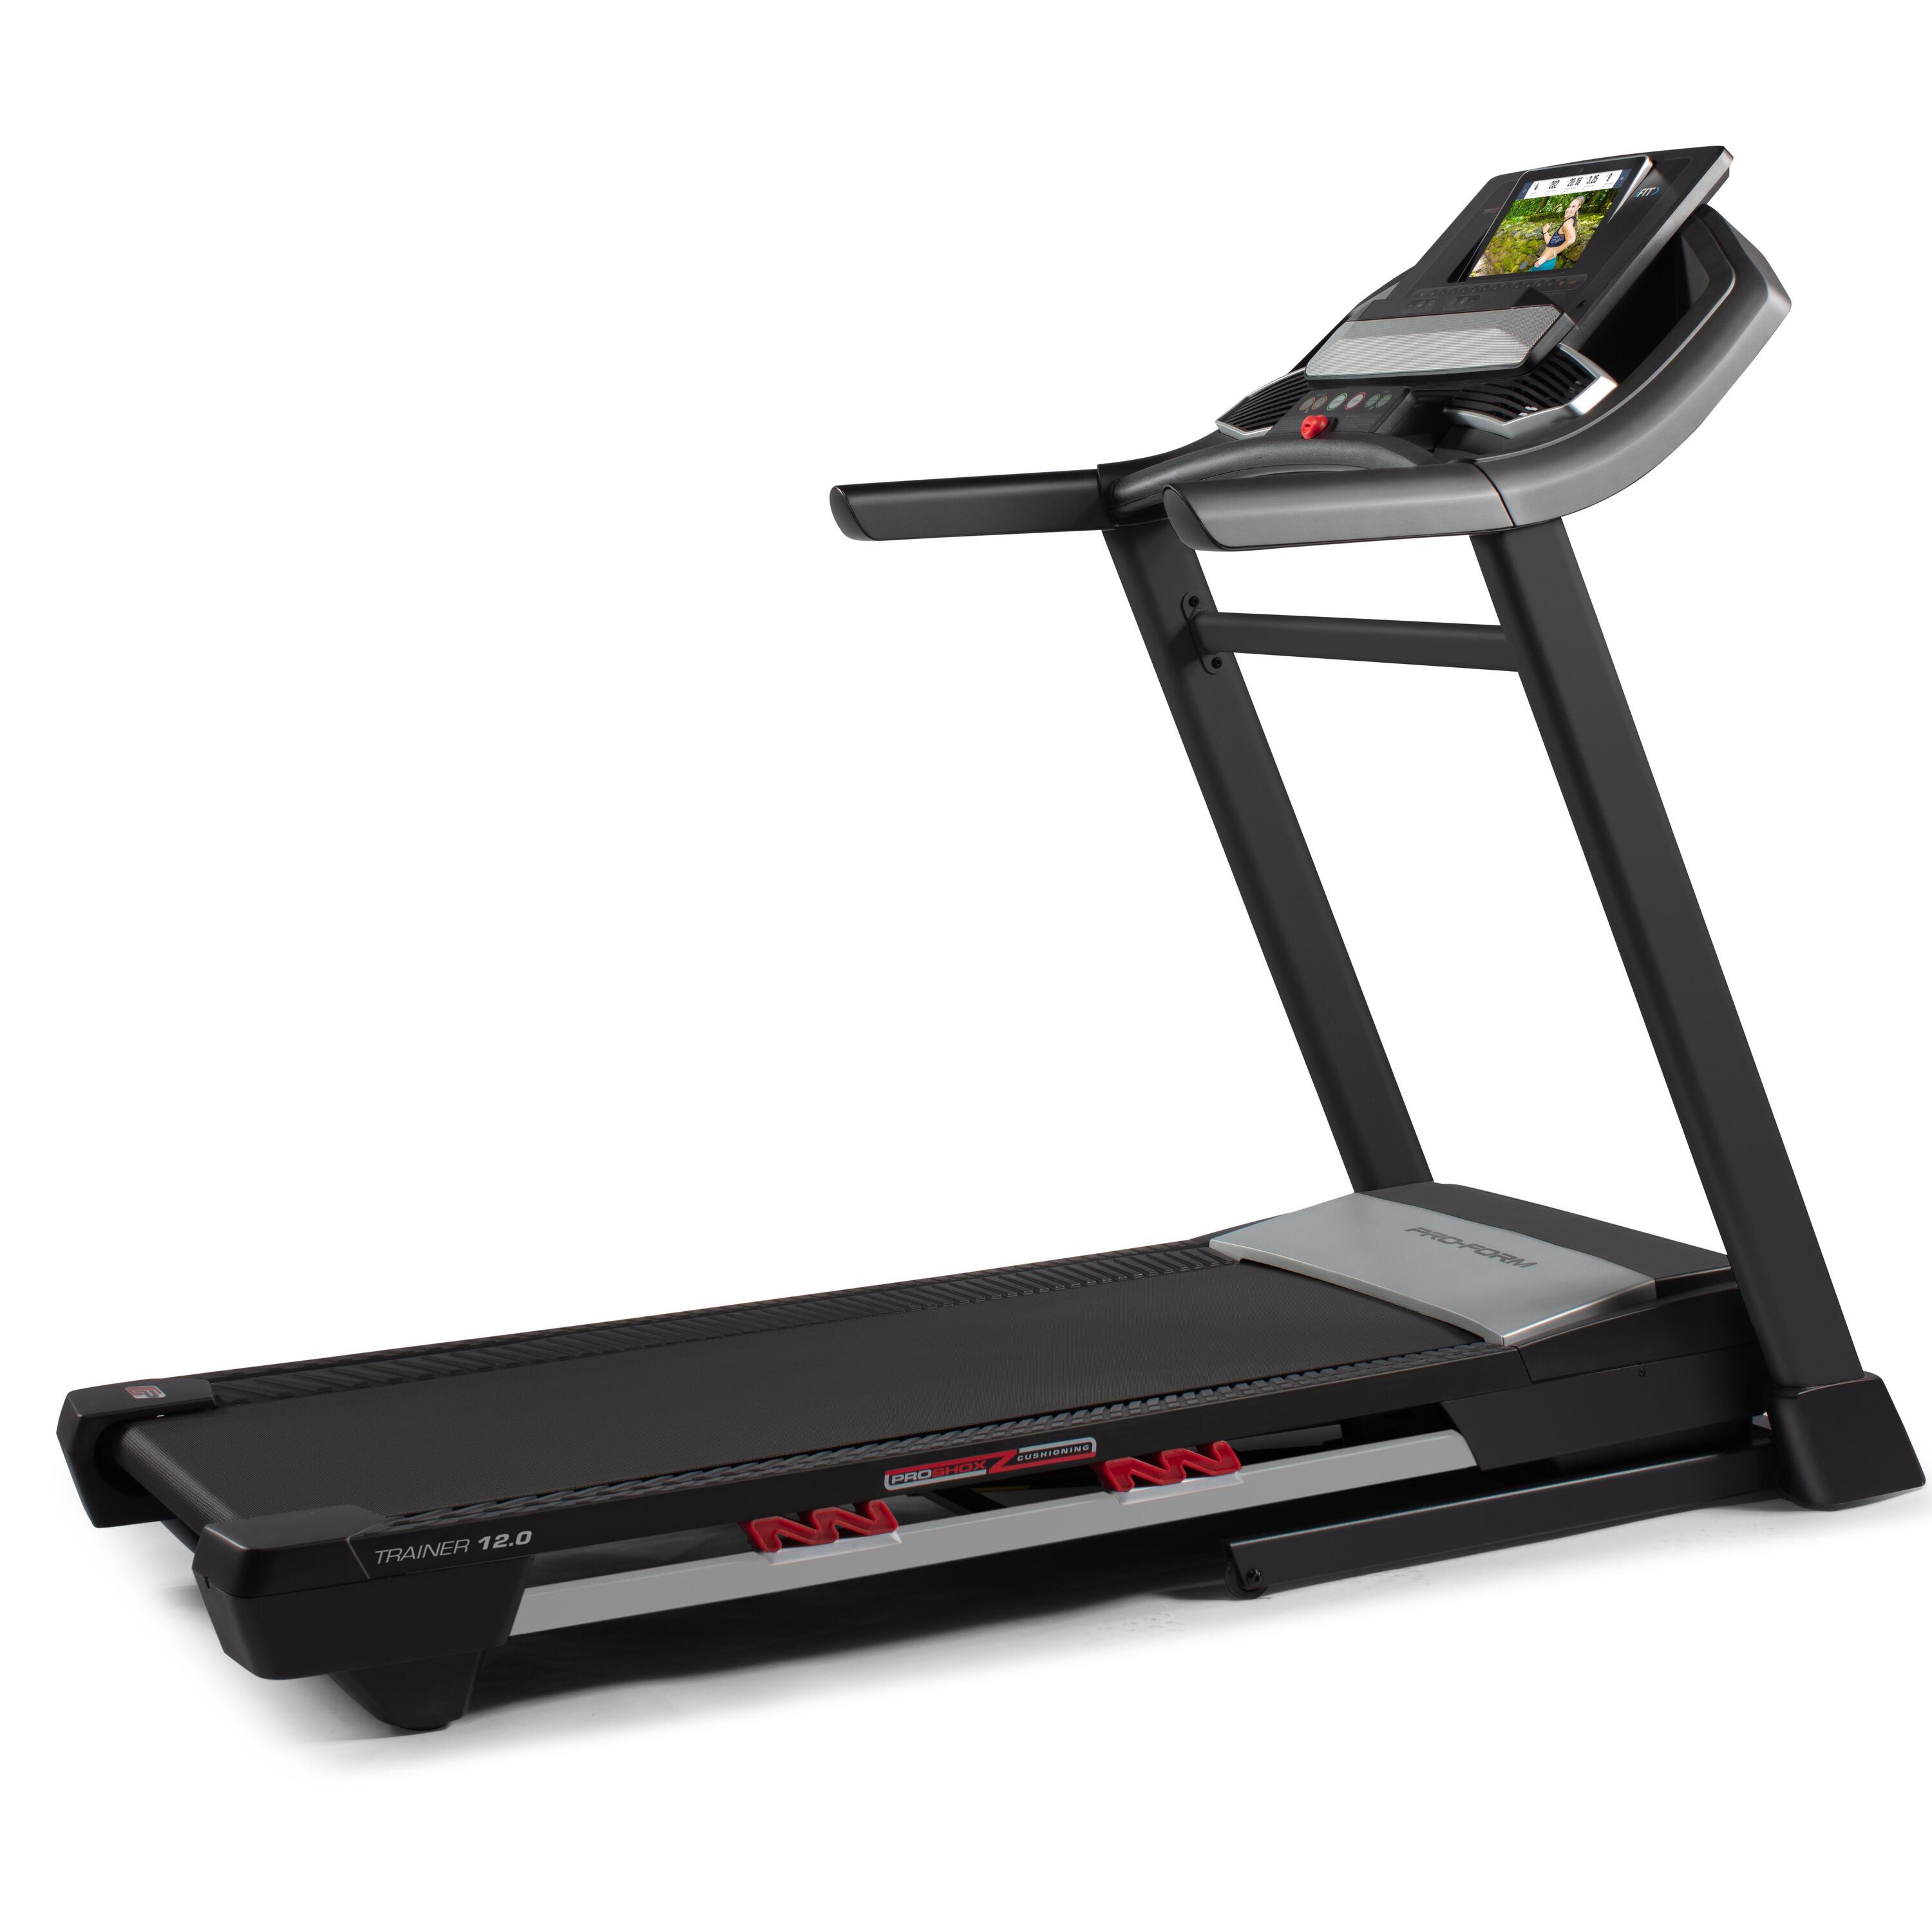 Treadmill Trainer 12.0 1/4